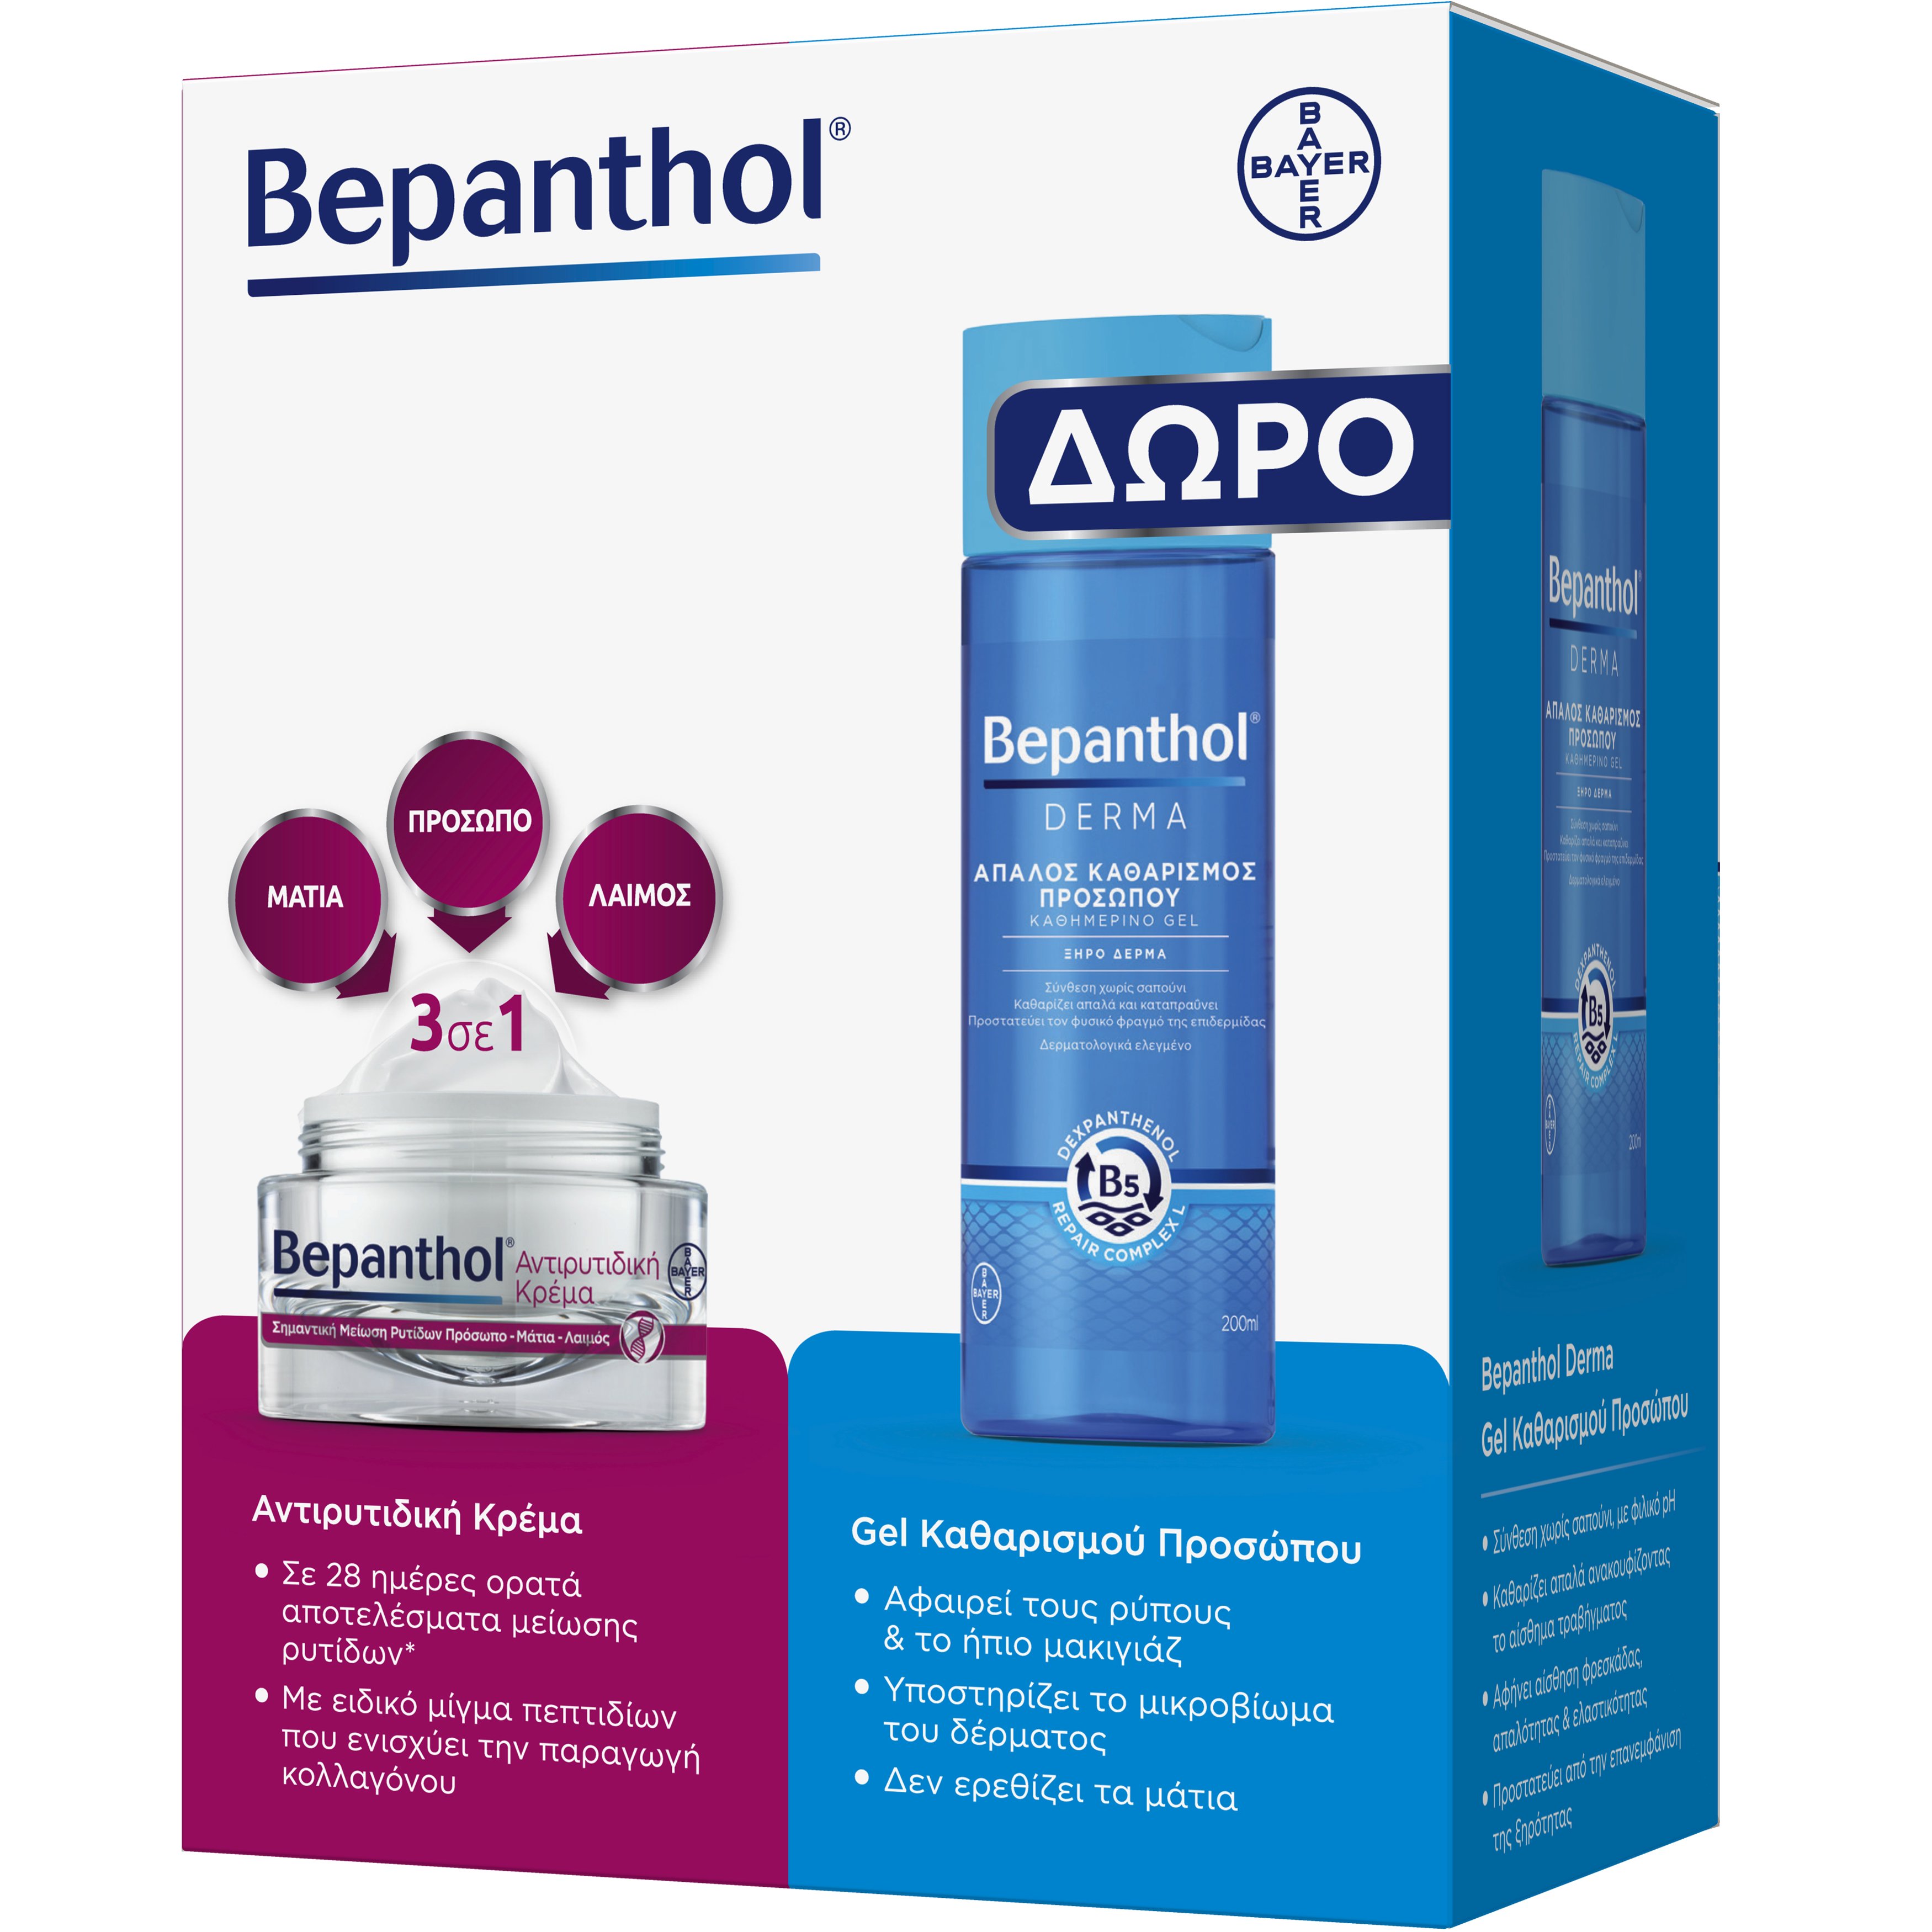 Bepanthol Bepanthol Promo Anti-Wrinkle Face, Eyes & Neck Cream 50ml & Δώρο Derma Daily Cleansing Face Gel 200ml